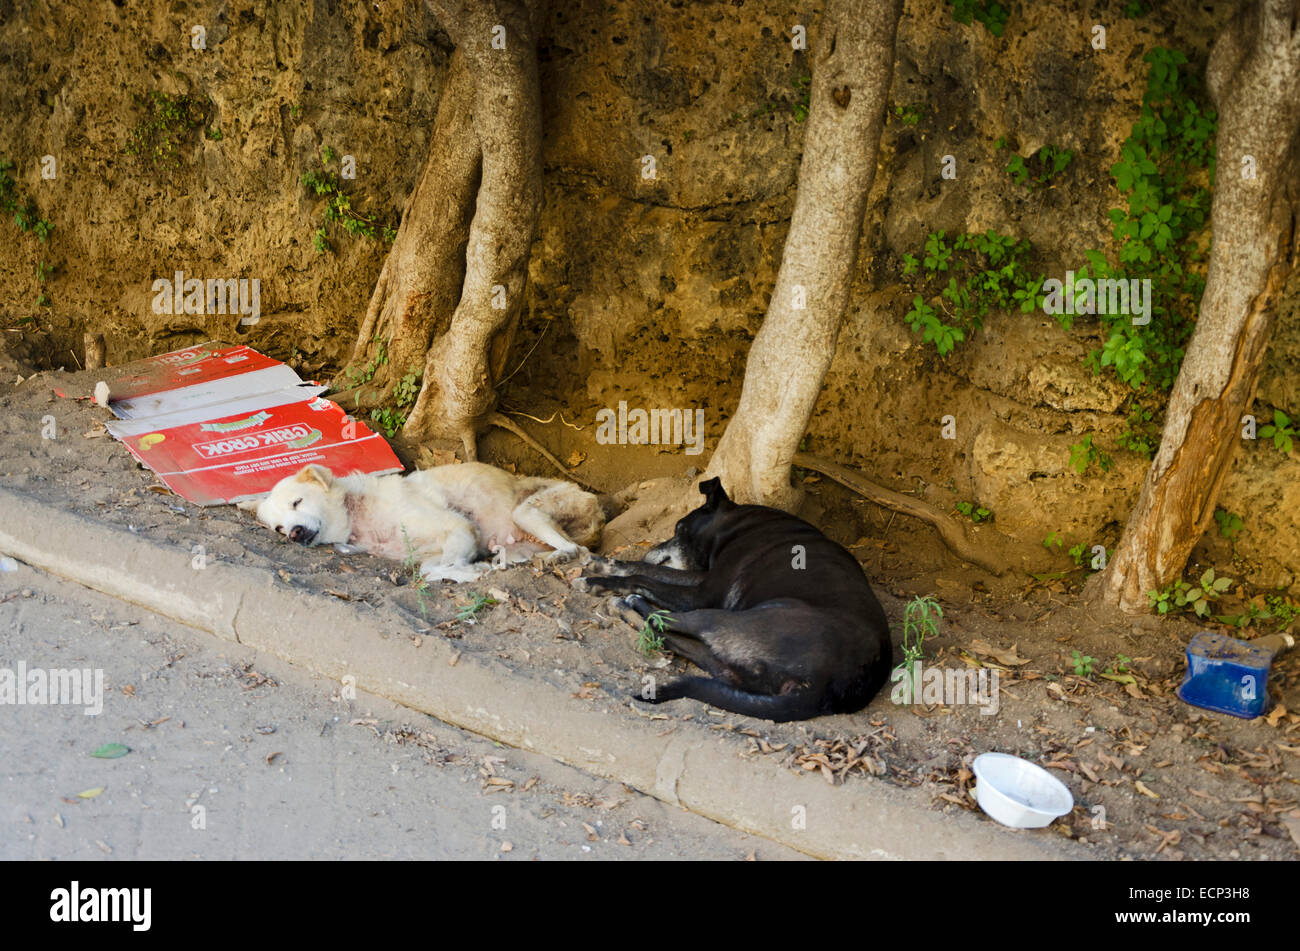 PALERMO, Sizilien, Italien - 3. Oktober 2012: zwei verlassene Hunde dösen in der Nähe eines Parks der Stadt. In Palermo sind allgegenwärtige aufgegeben Stockfoto